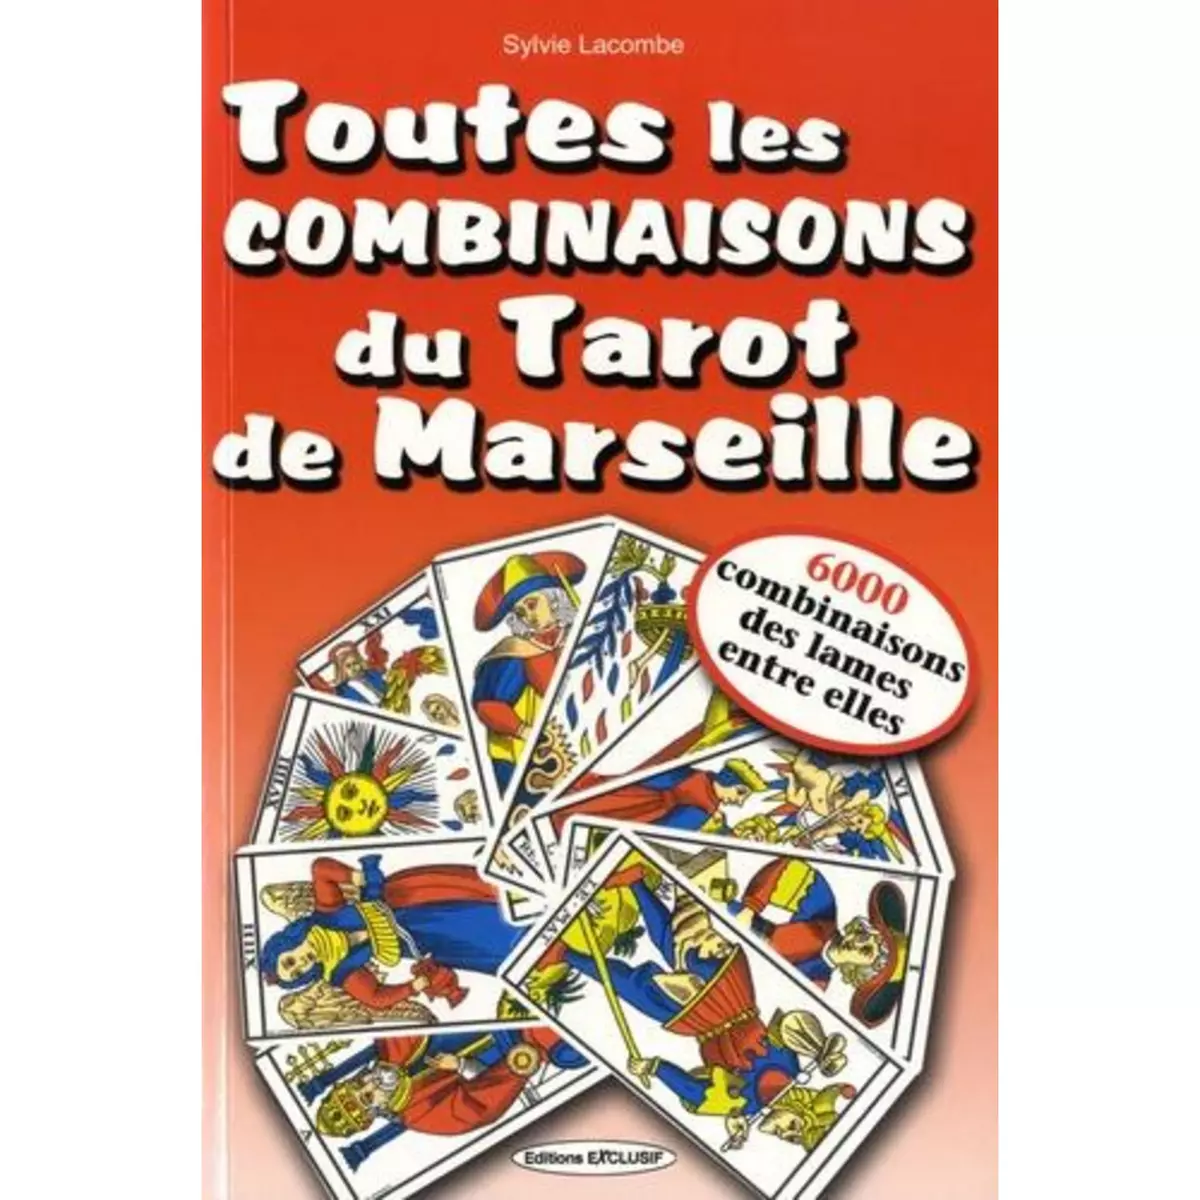  TOUTES LES COMBINAISONS DU TAROT DE MARSEILLE. 6000 COMBINAISONS DES LAMES ENTRE ELLES, Lacombe Sylvie